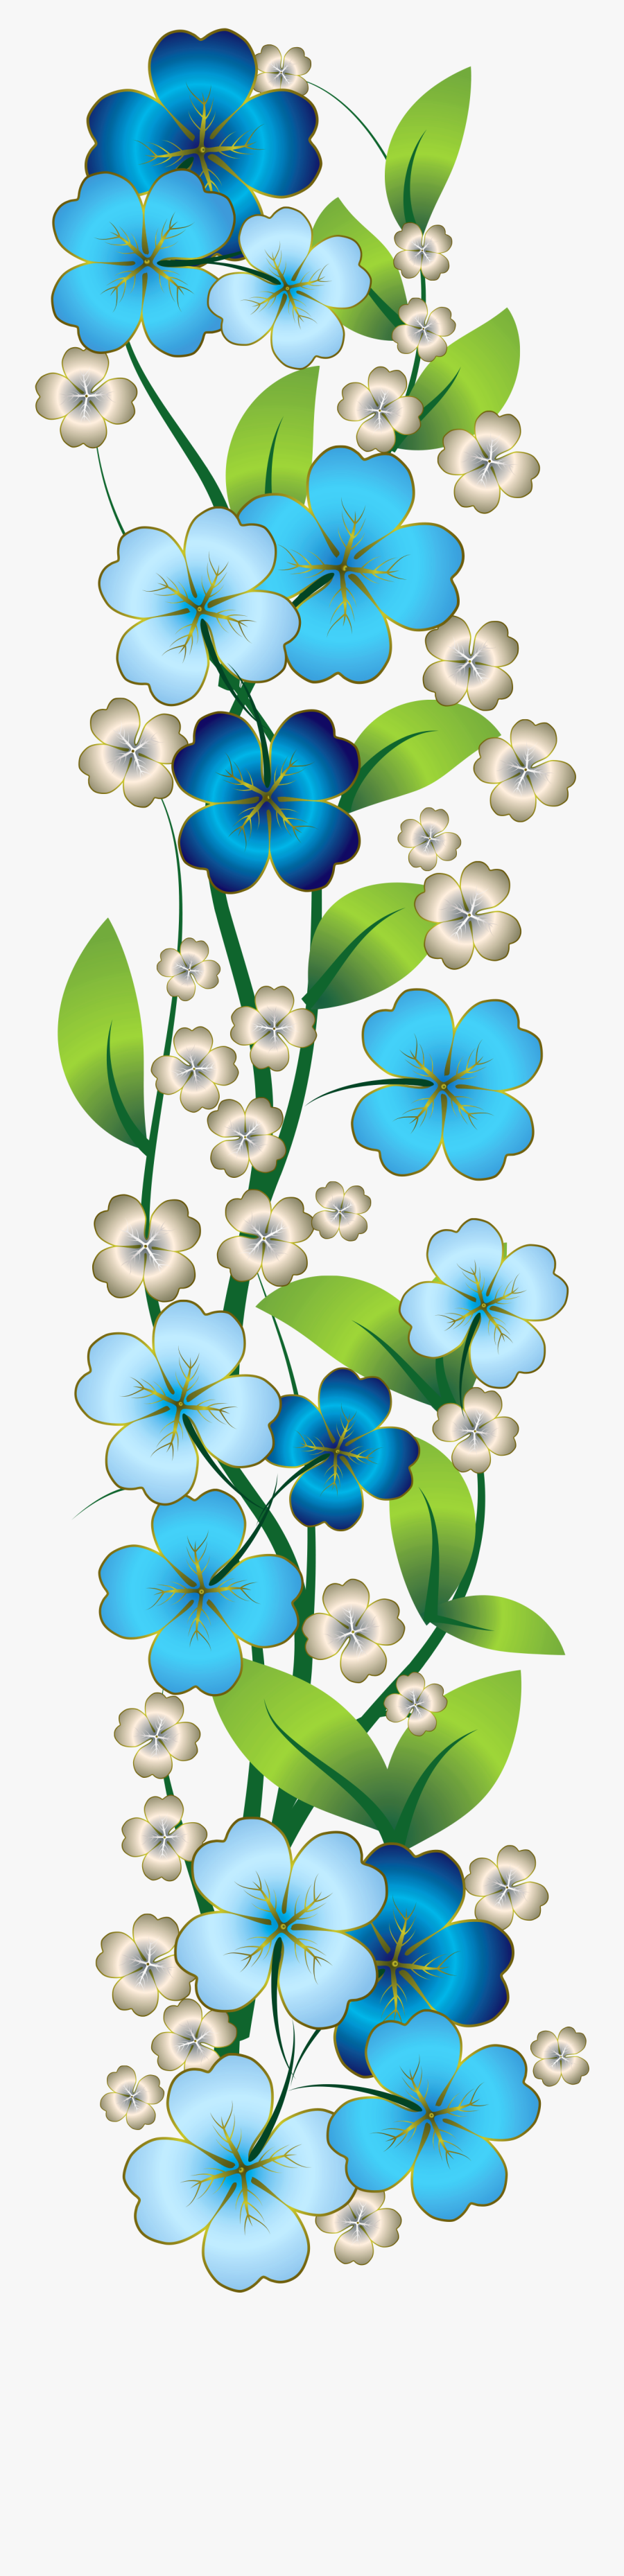 Blue Flower Decor Png Clipart - Blue Flower Border Png, Transparent Clipart